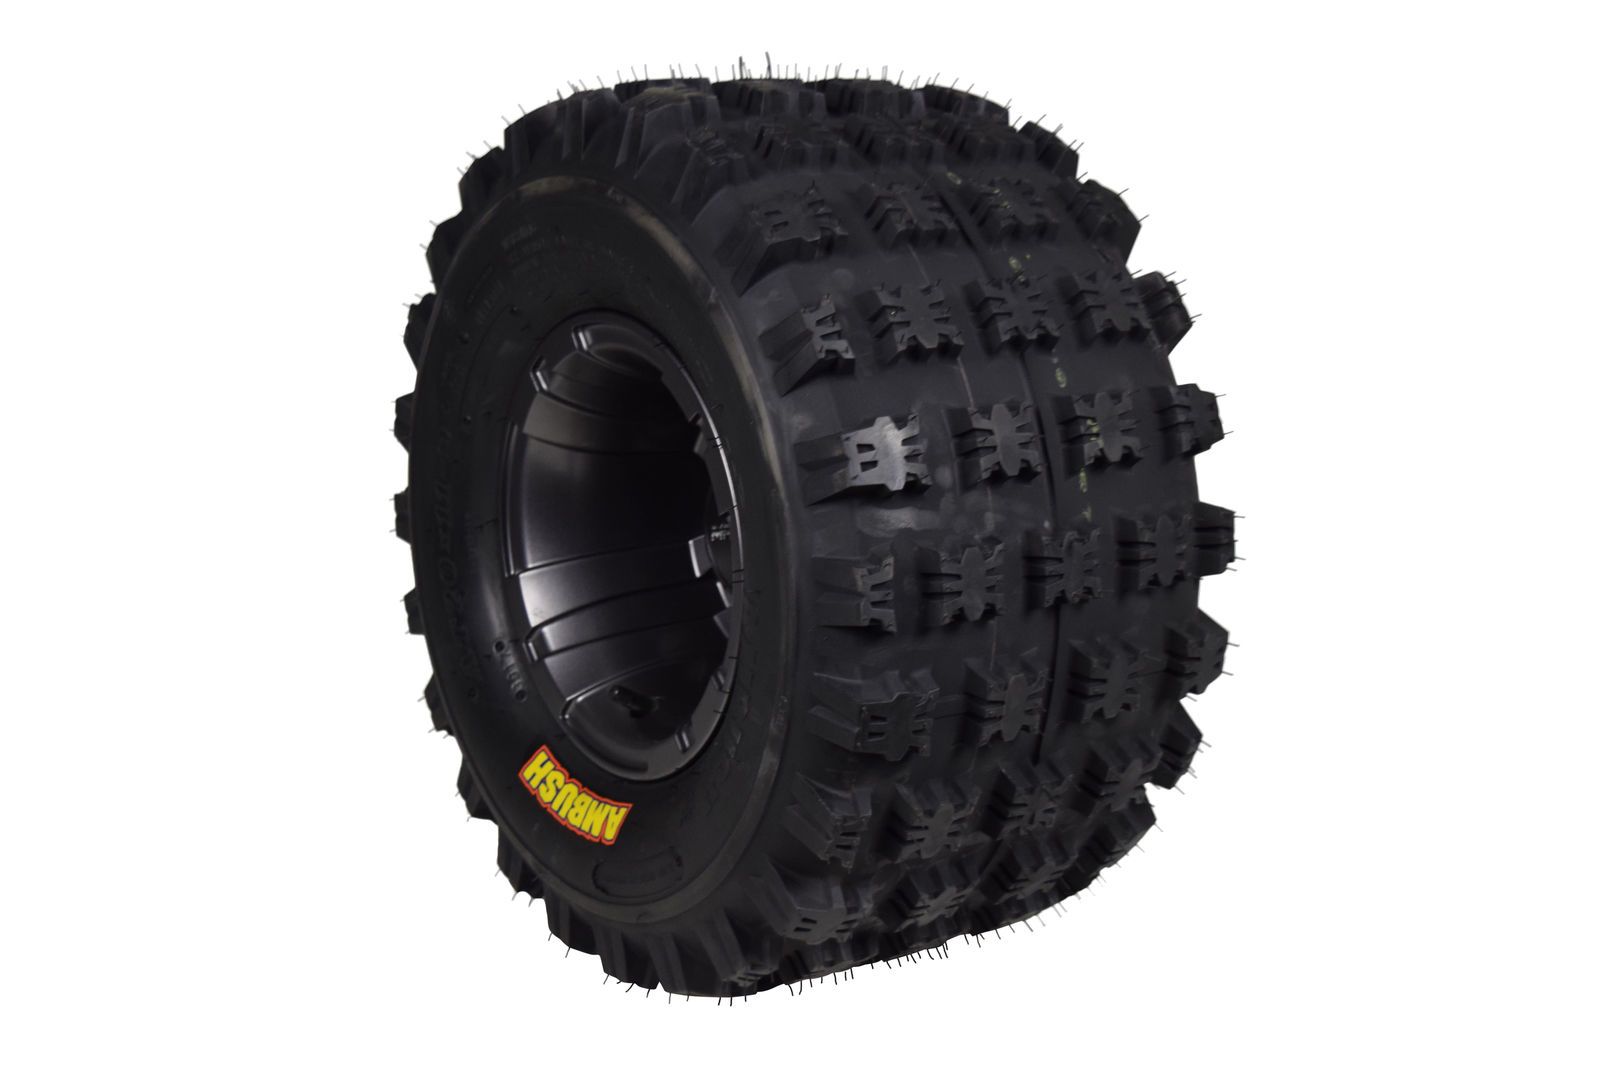 Ambush 21x7-10 20x11-9 ATV Front Rear Tire & Wheel Kit 21x7x10 20x11x9 (4 Pack)